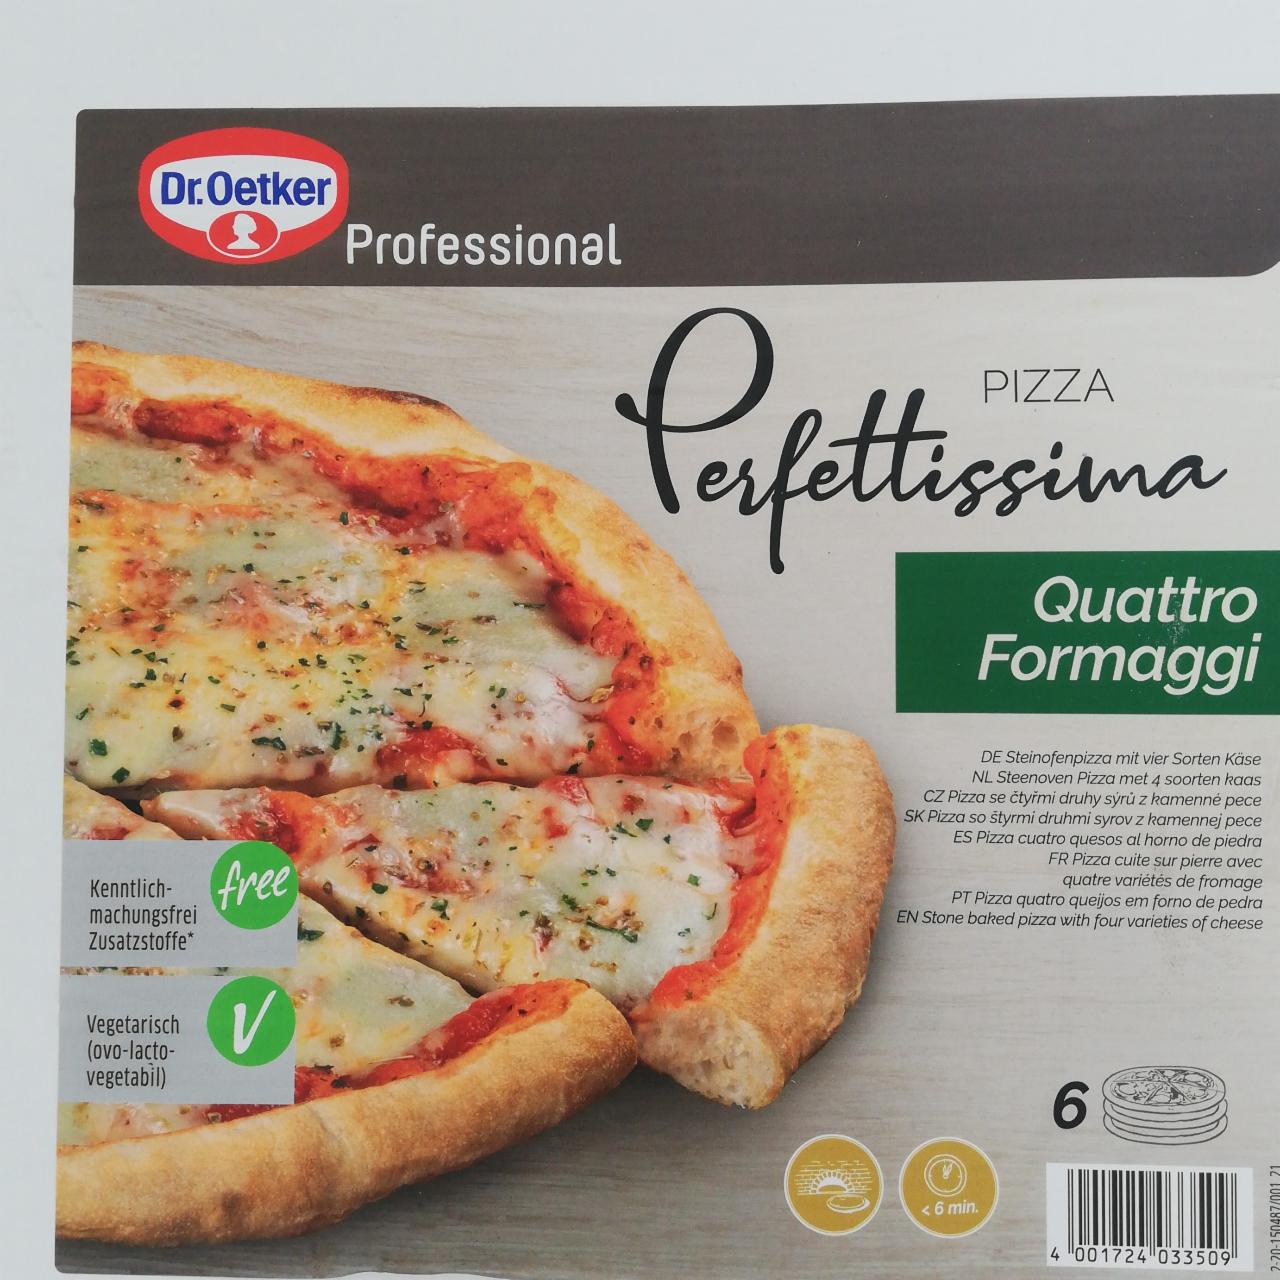 Fotografie - Pizza Perfettissima Quattro Formaggi Dr.Oetker Professional